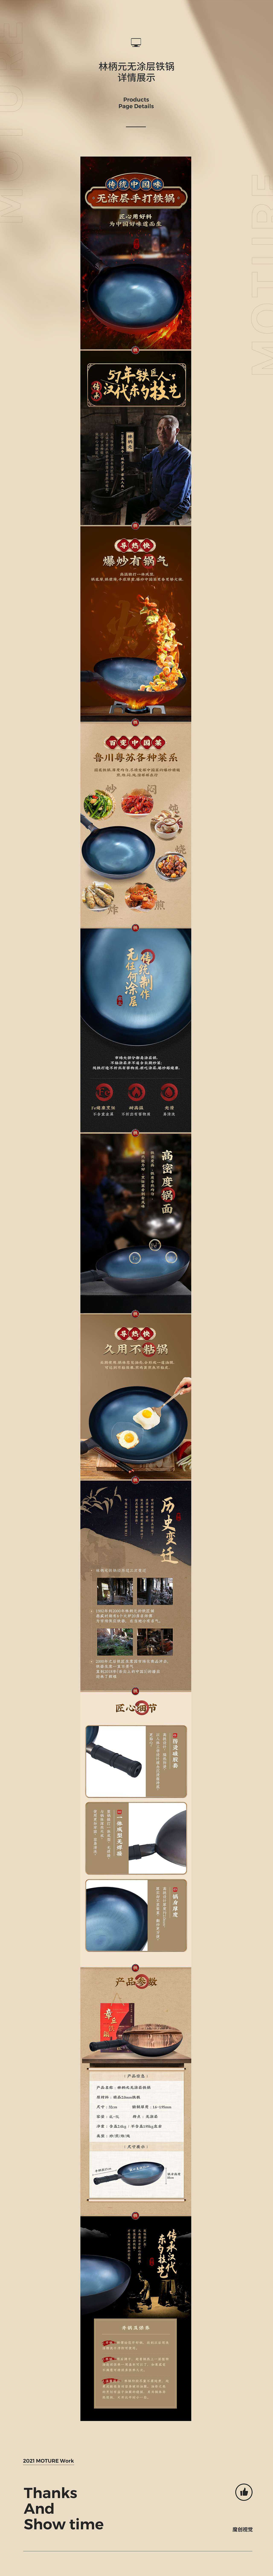 X3 中国风/日系 炒锅详情页全案分享 厨具 麦饭石 生铁